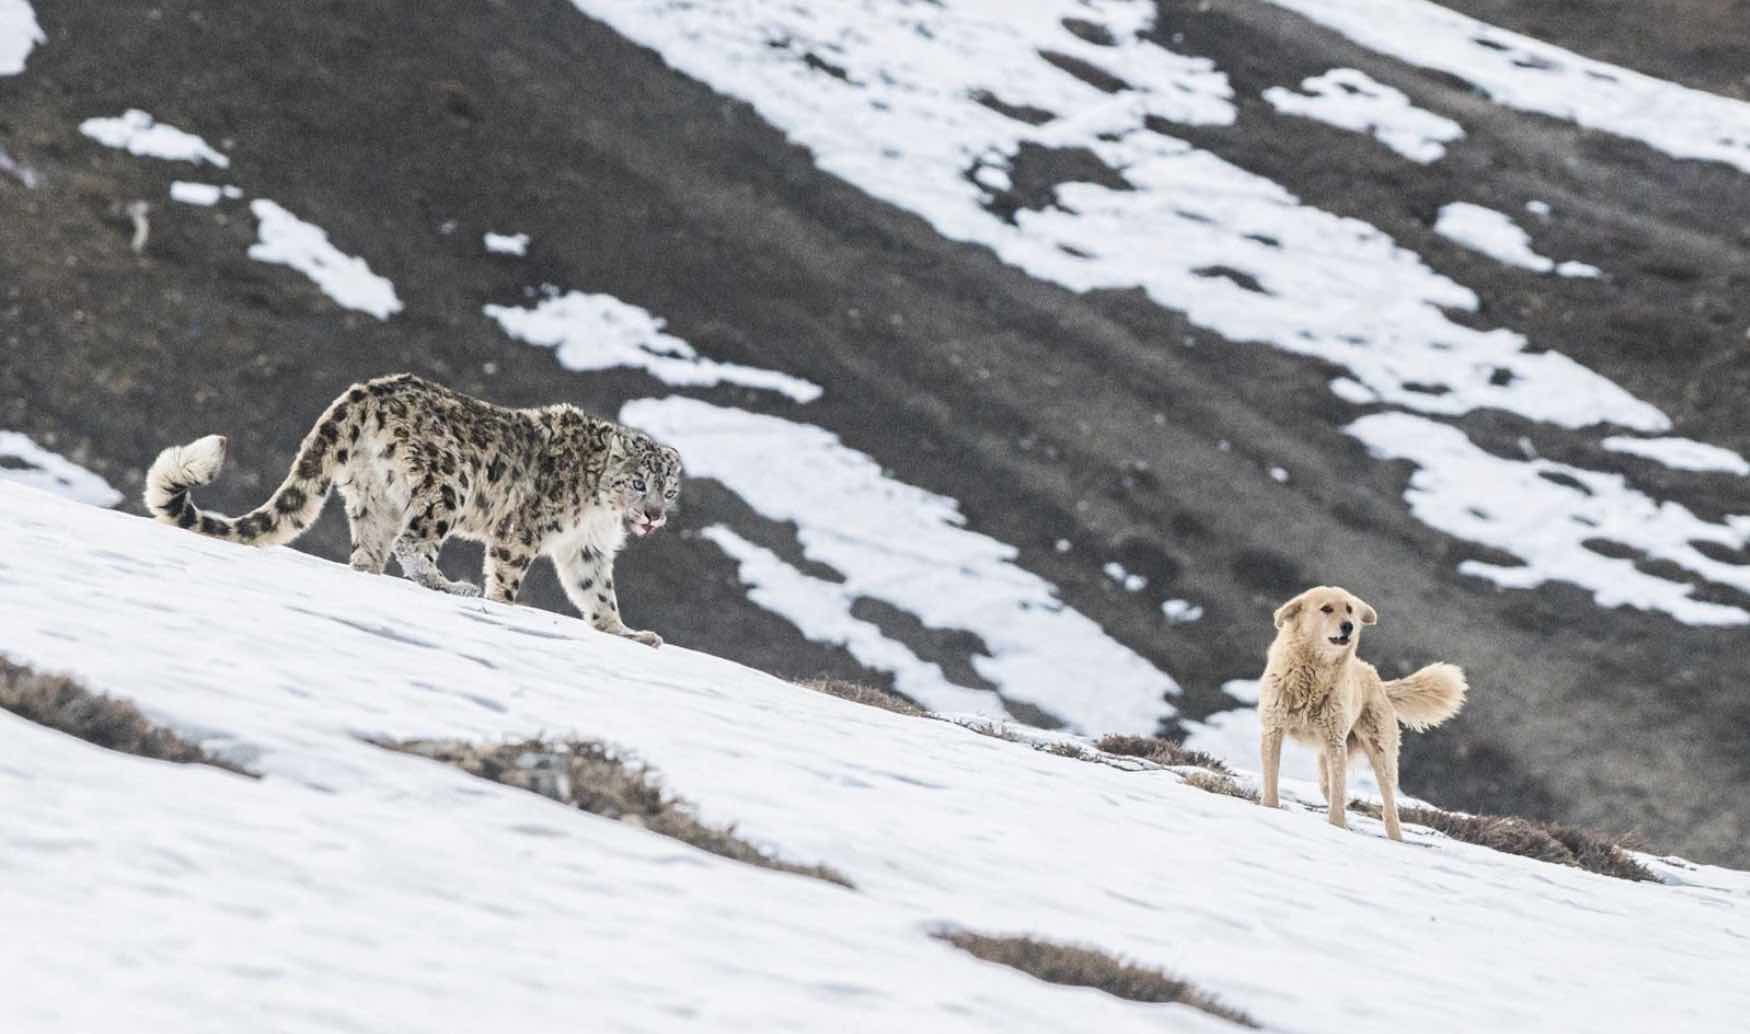 Um leopardo-das-neves se preparando para atacar um cão selvagem é uma das fotos premiadas da categoria "Conservação" do concurso Nature inFocus